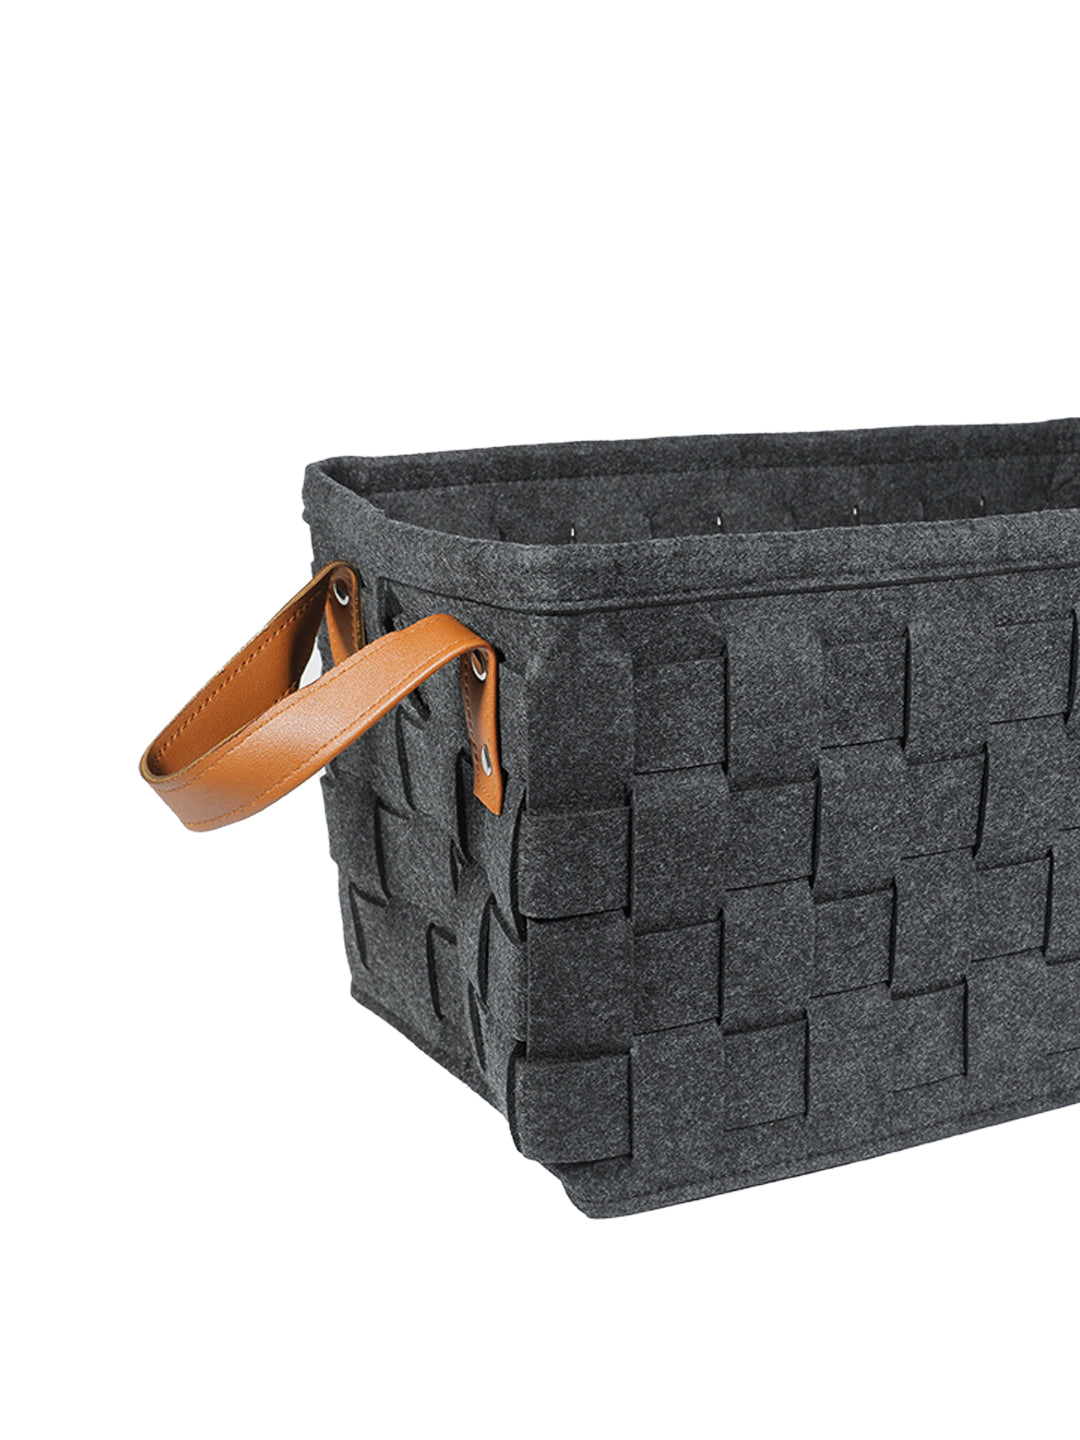 VON CASA Felt Fabric Storage Basket Organizer Boxes - 25 Litre, Dark Grey